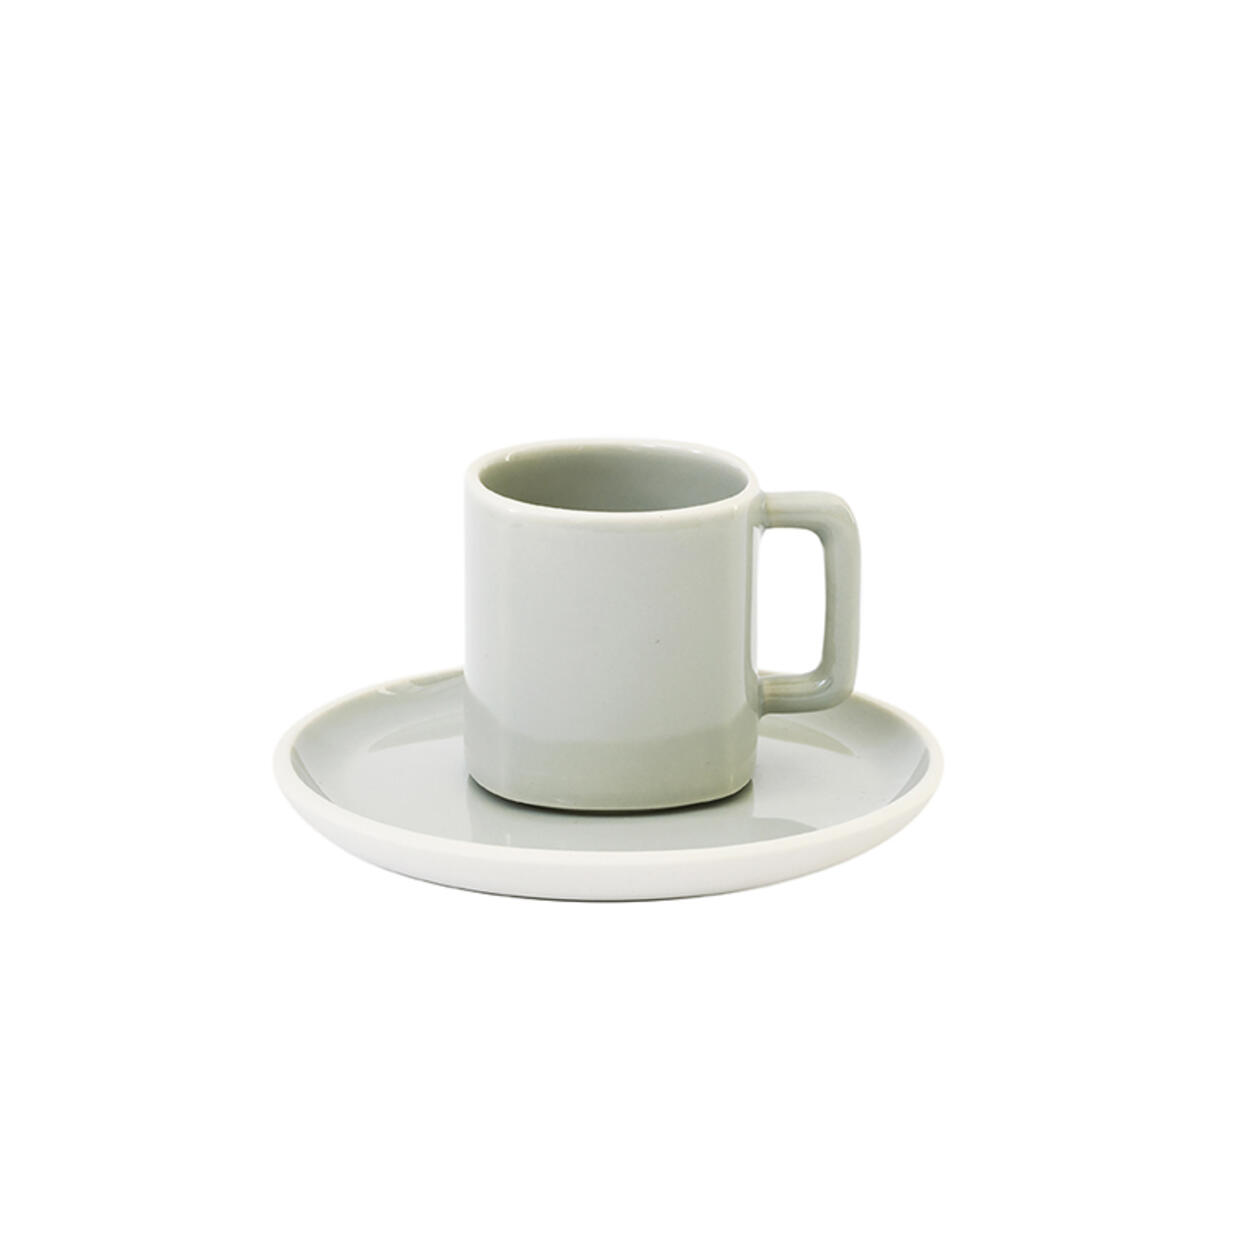 Handmade ceramic espresso cup & saucer Studio calque